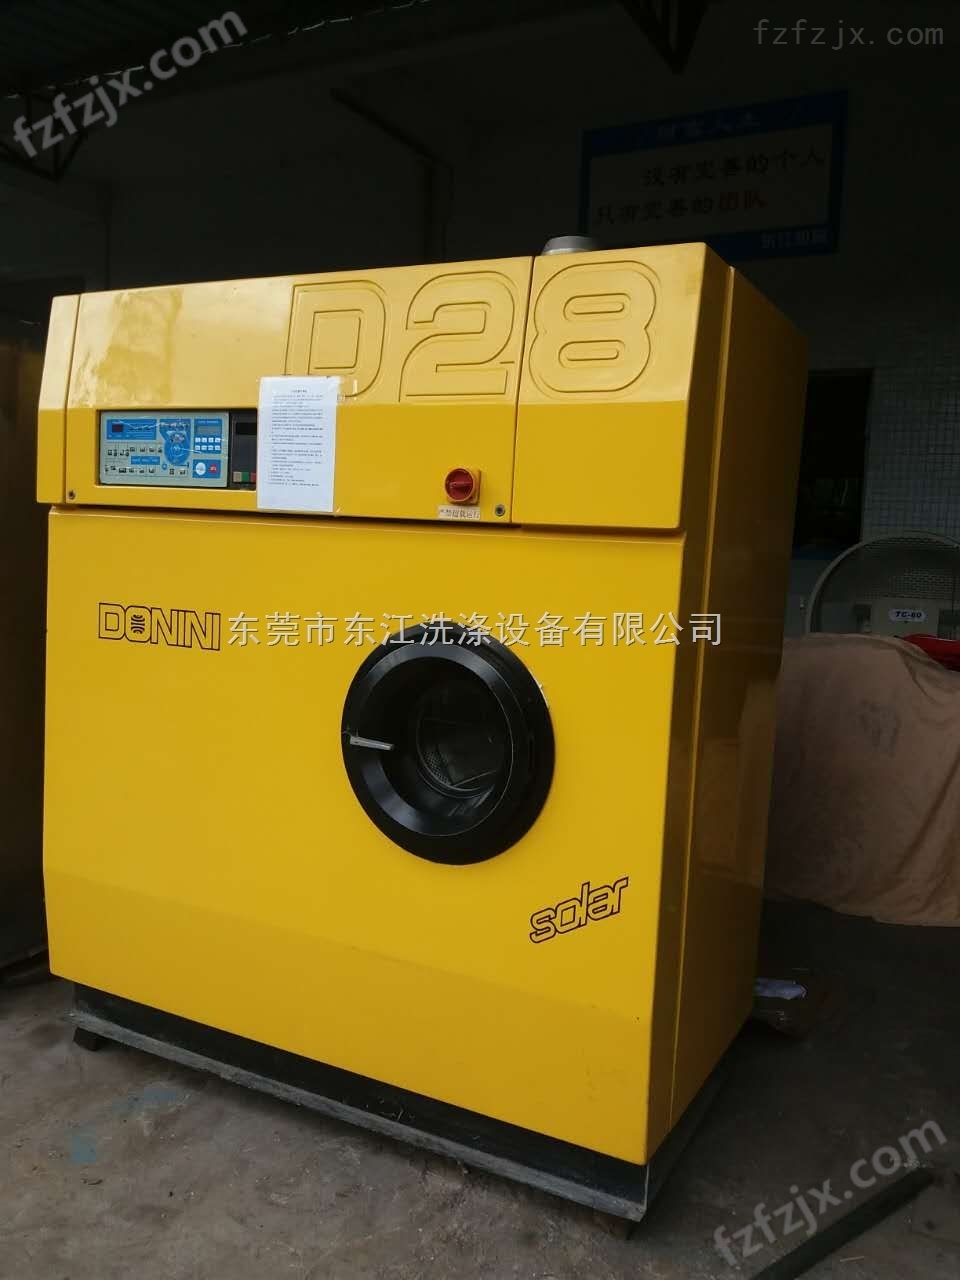 出售上海航星12公斤干洗机